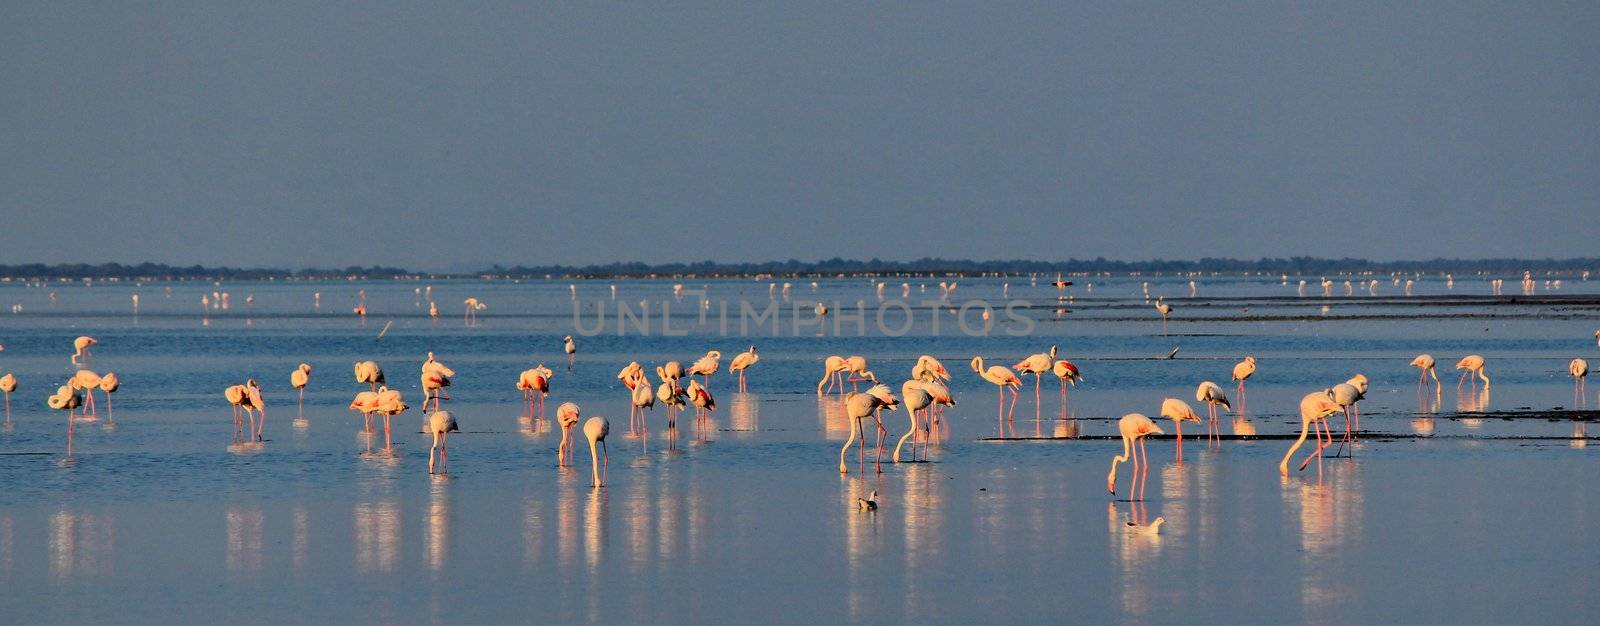 Camargue flamingo by mariephotos